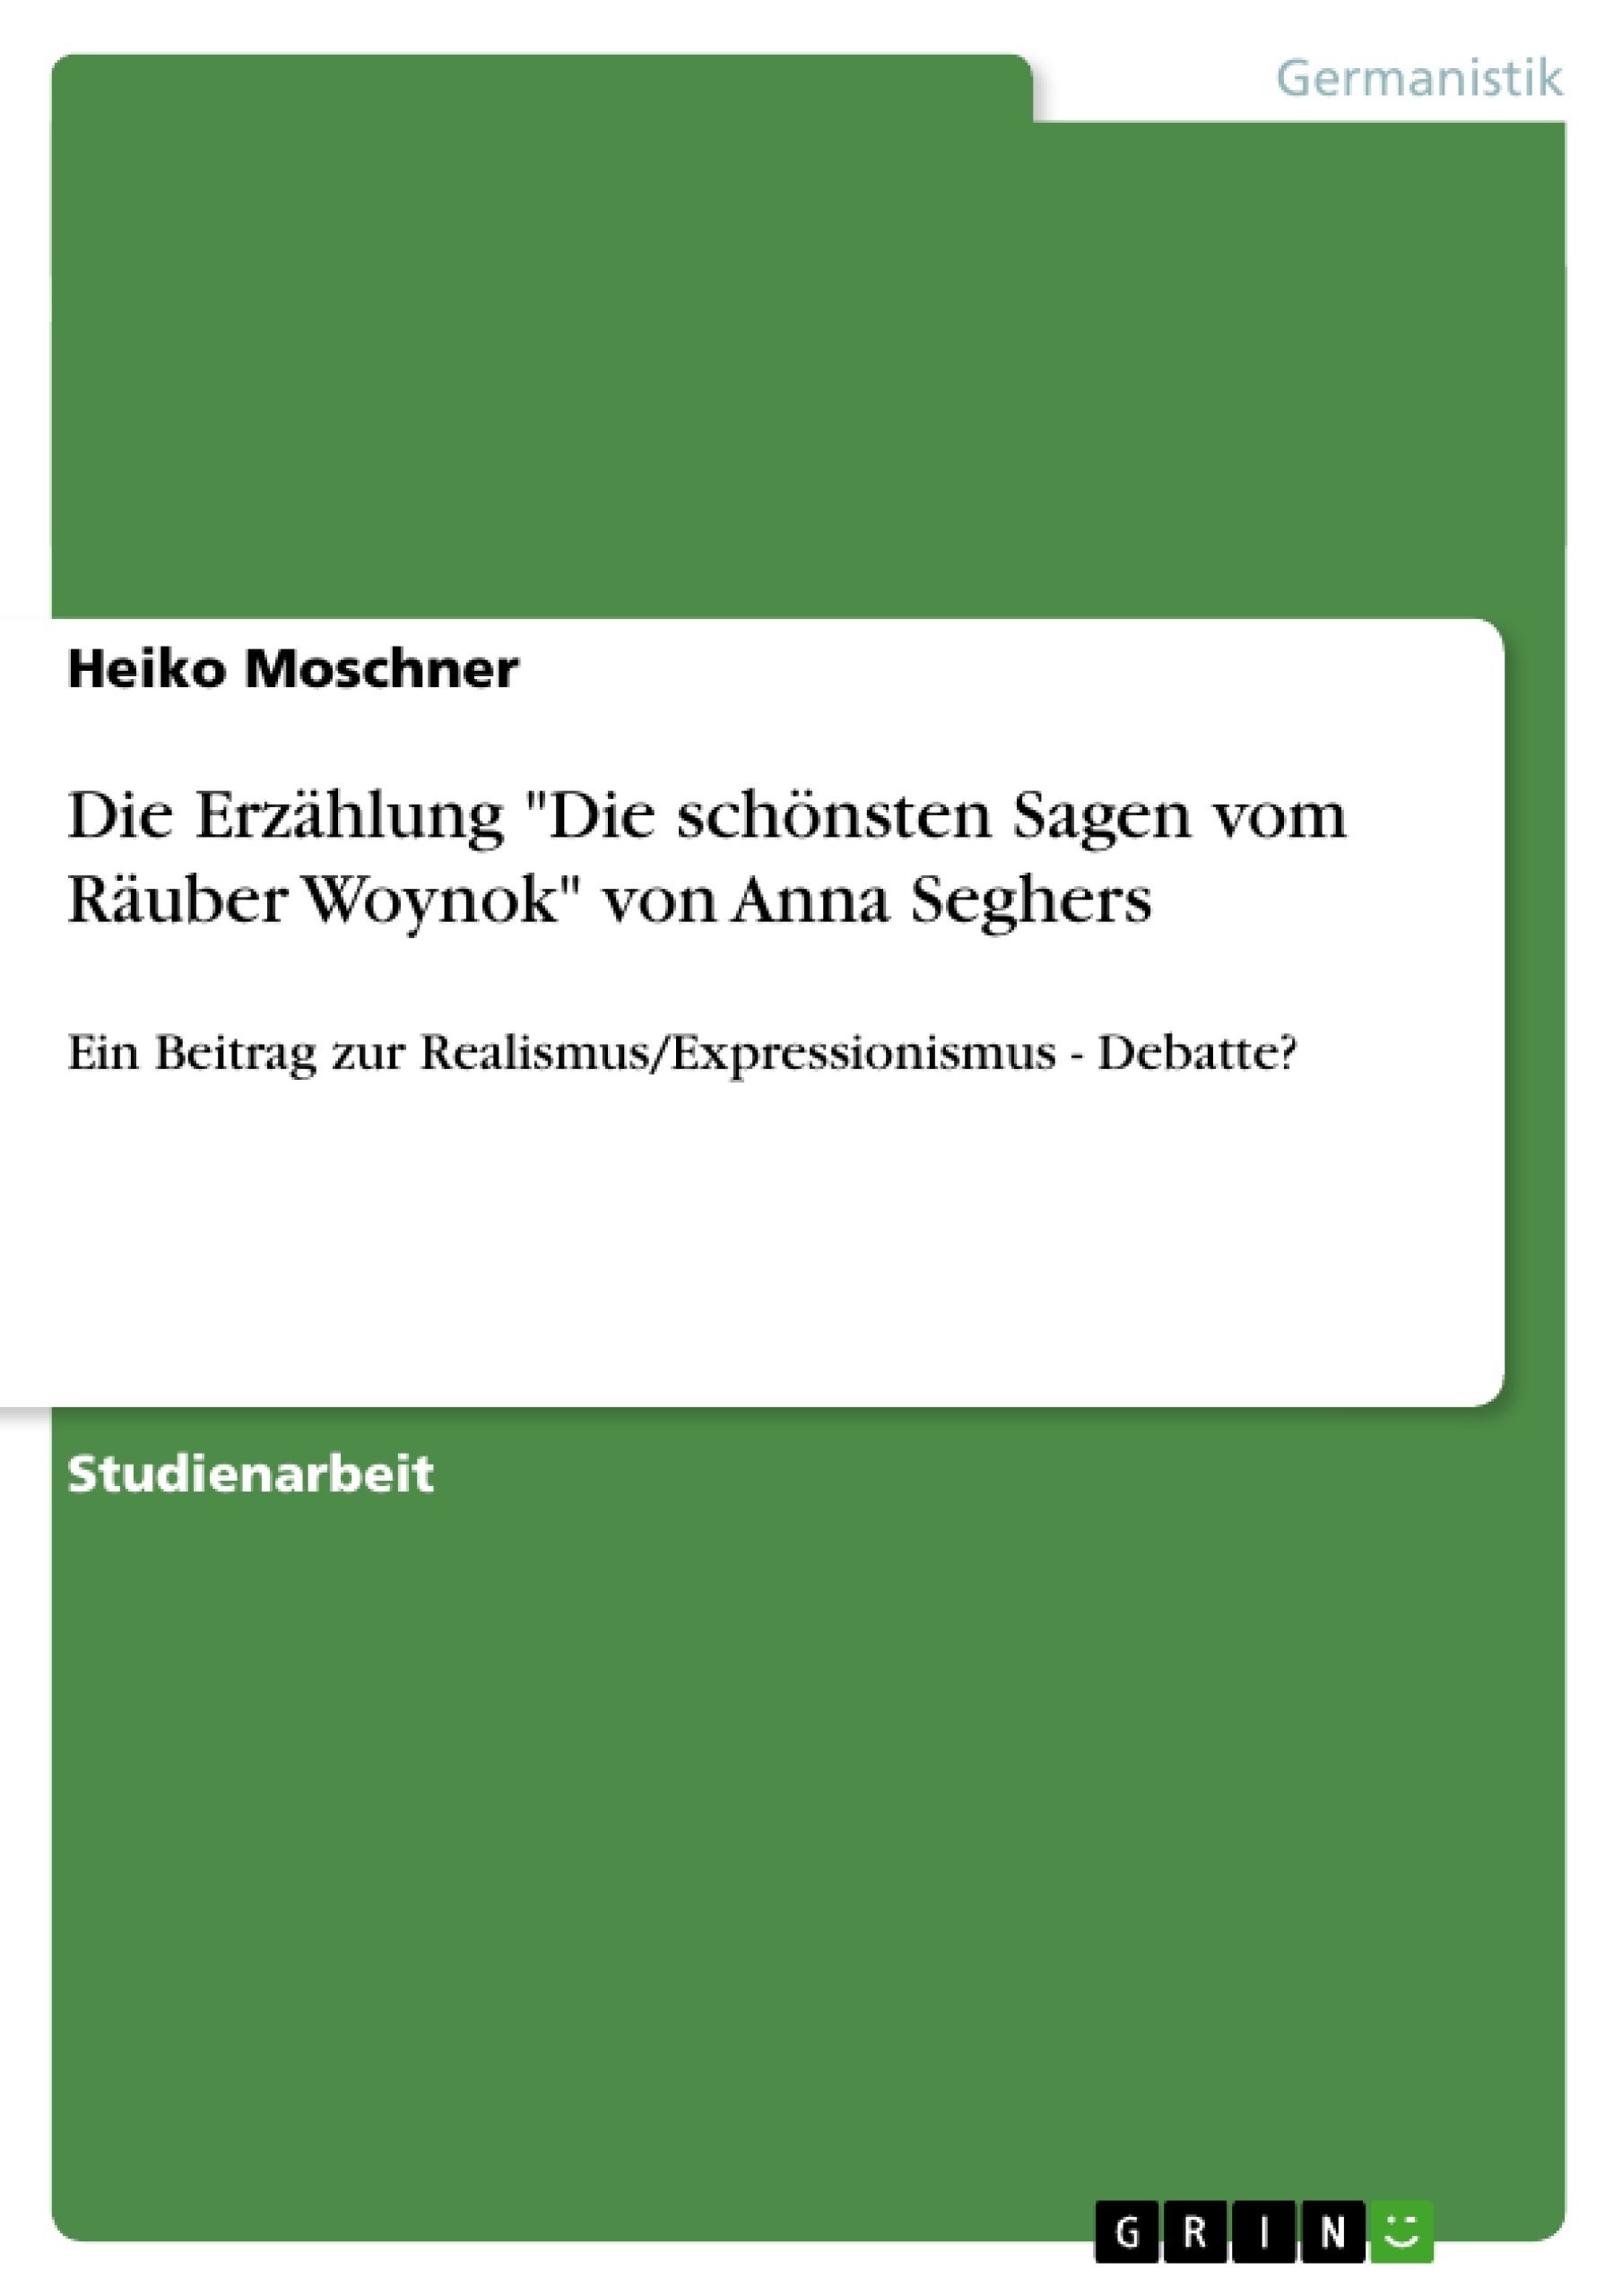 Título: Die Erzählung "Die schönsten Sagen vom Räuber Woynok" von Anna Seghers